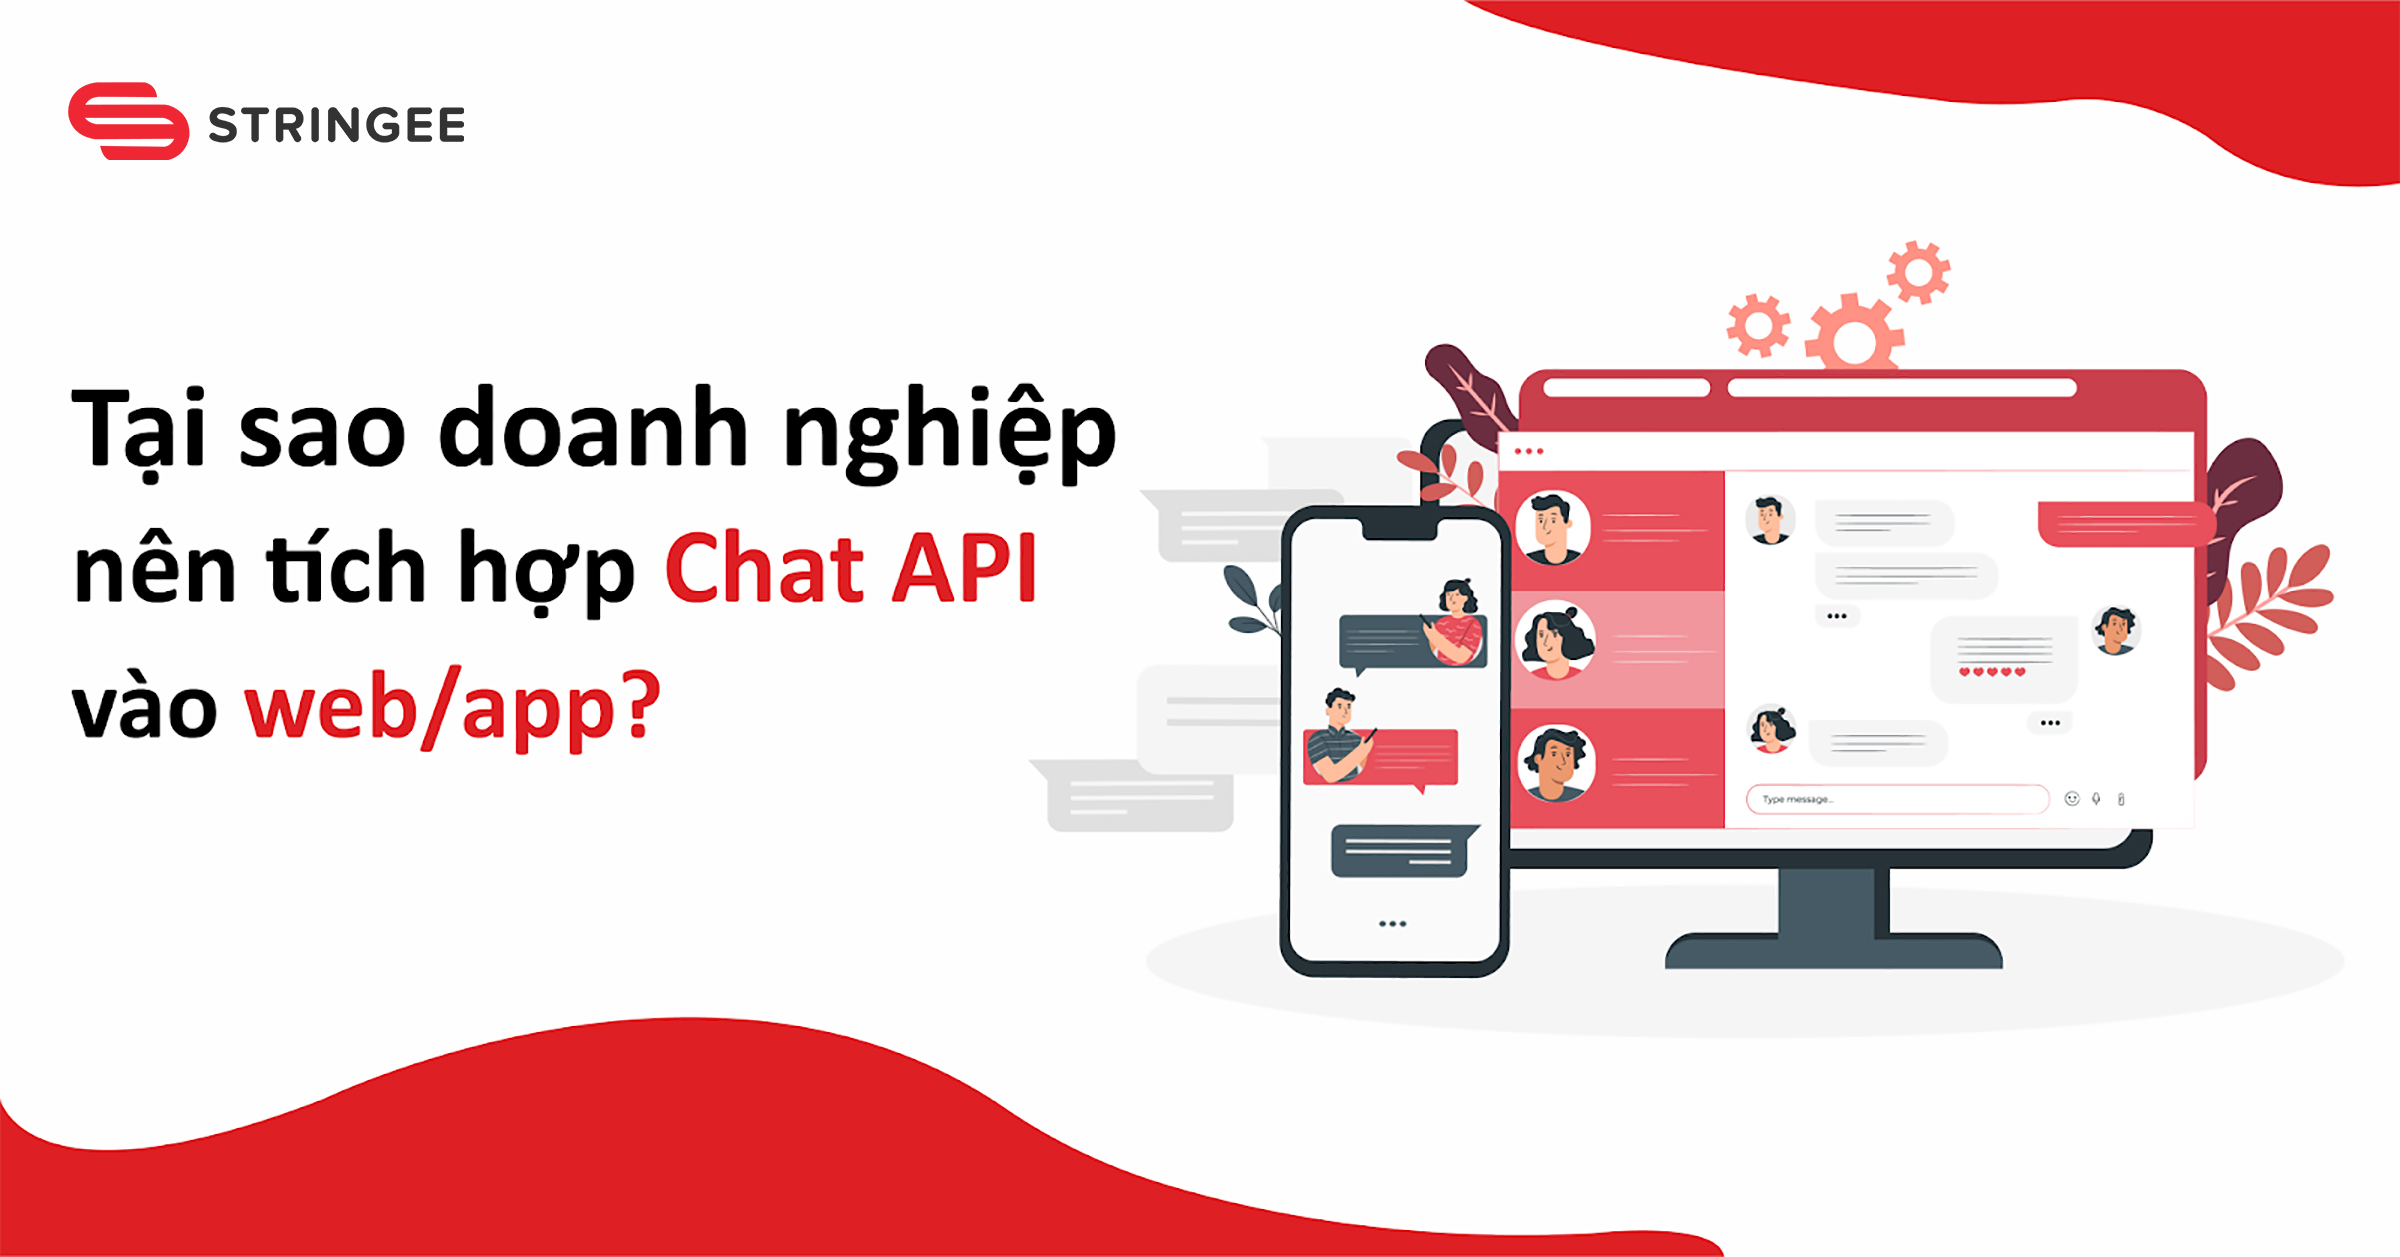 Chat API là gì? Tại sao doanh nghiệp nên tích hợp chat api vào web/app?